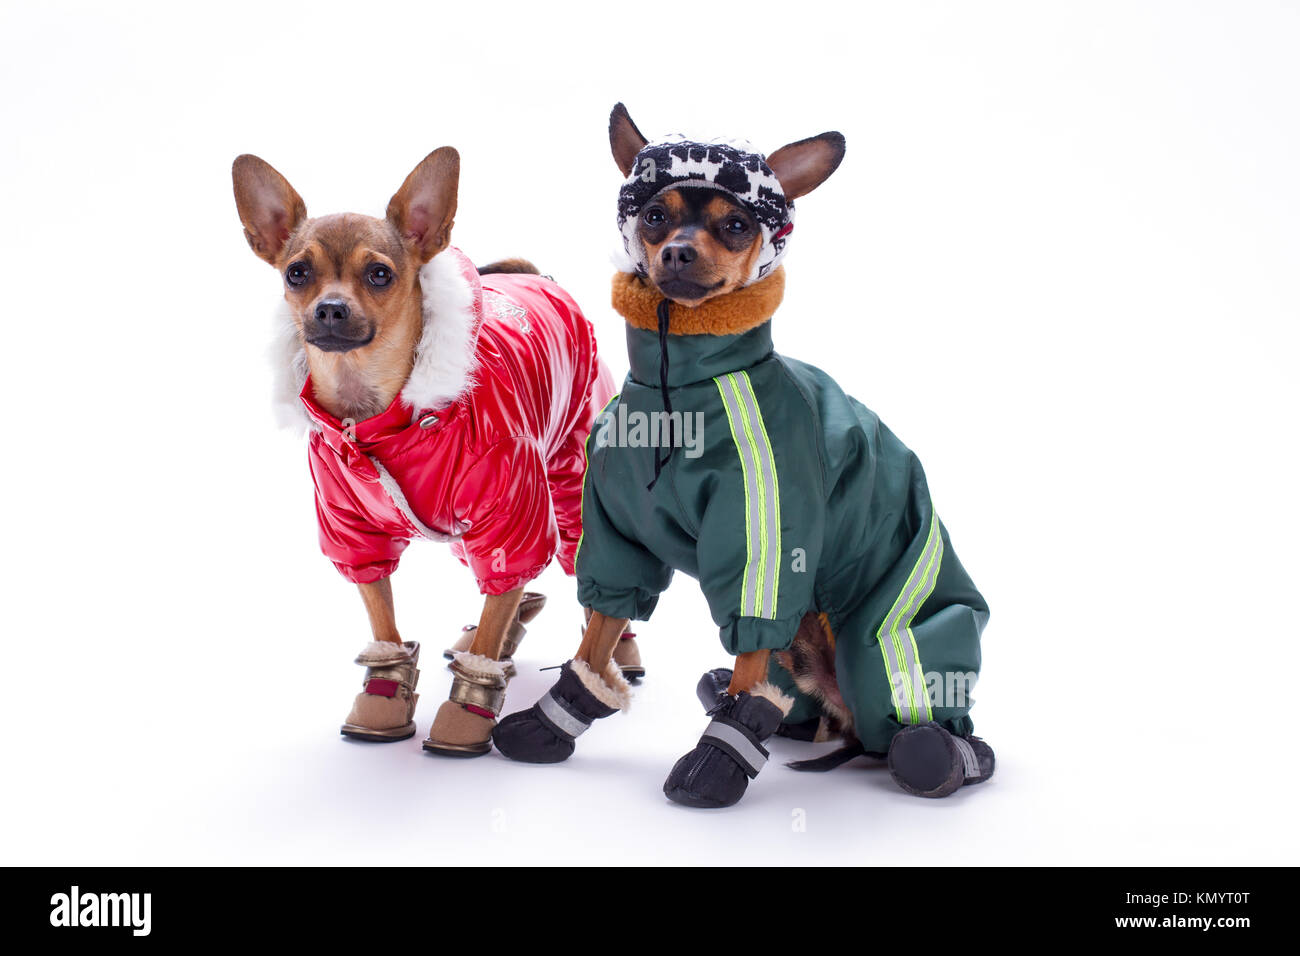 Chihuahua miniatura terrier y perros en Fotografía de Alamy